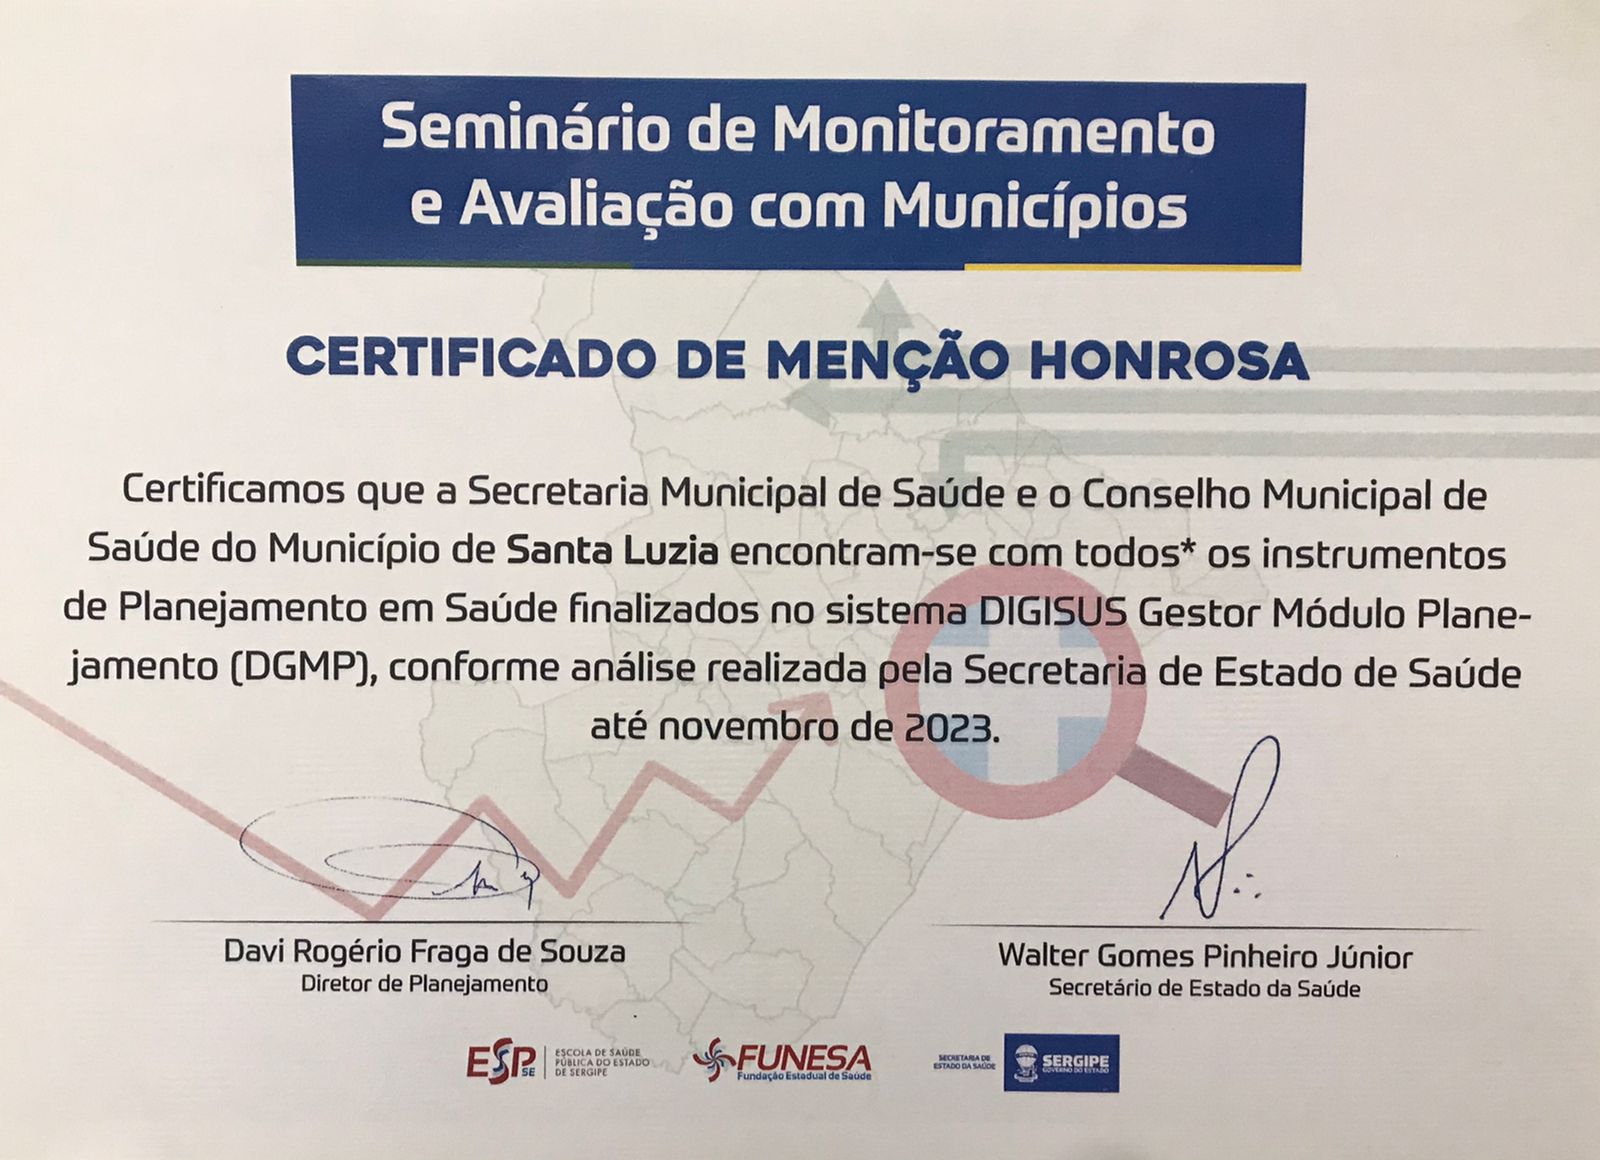 PREFEITURA RECEBE MENÇÃO HONROSA - Prefeitura Municipal de Santa